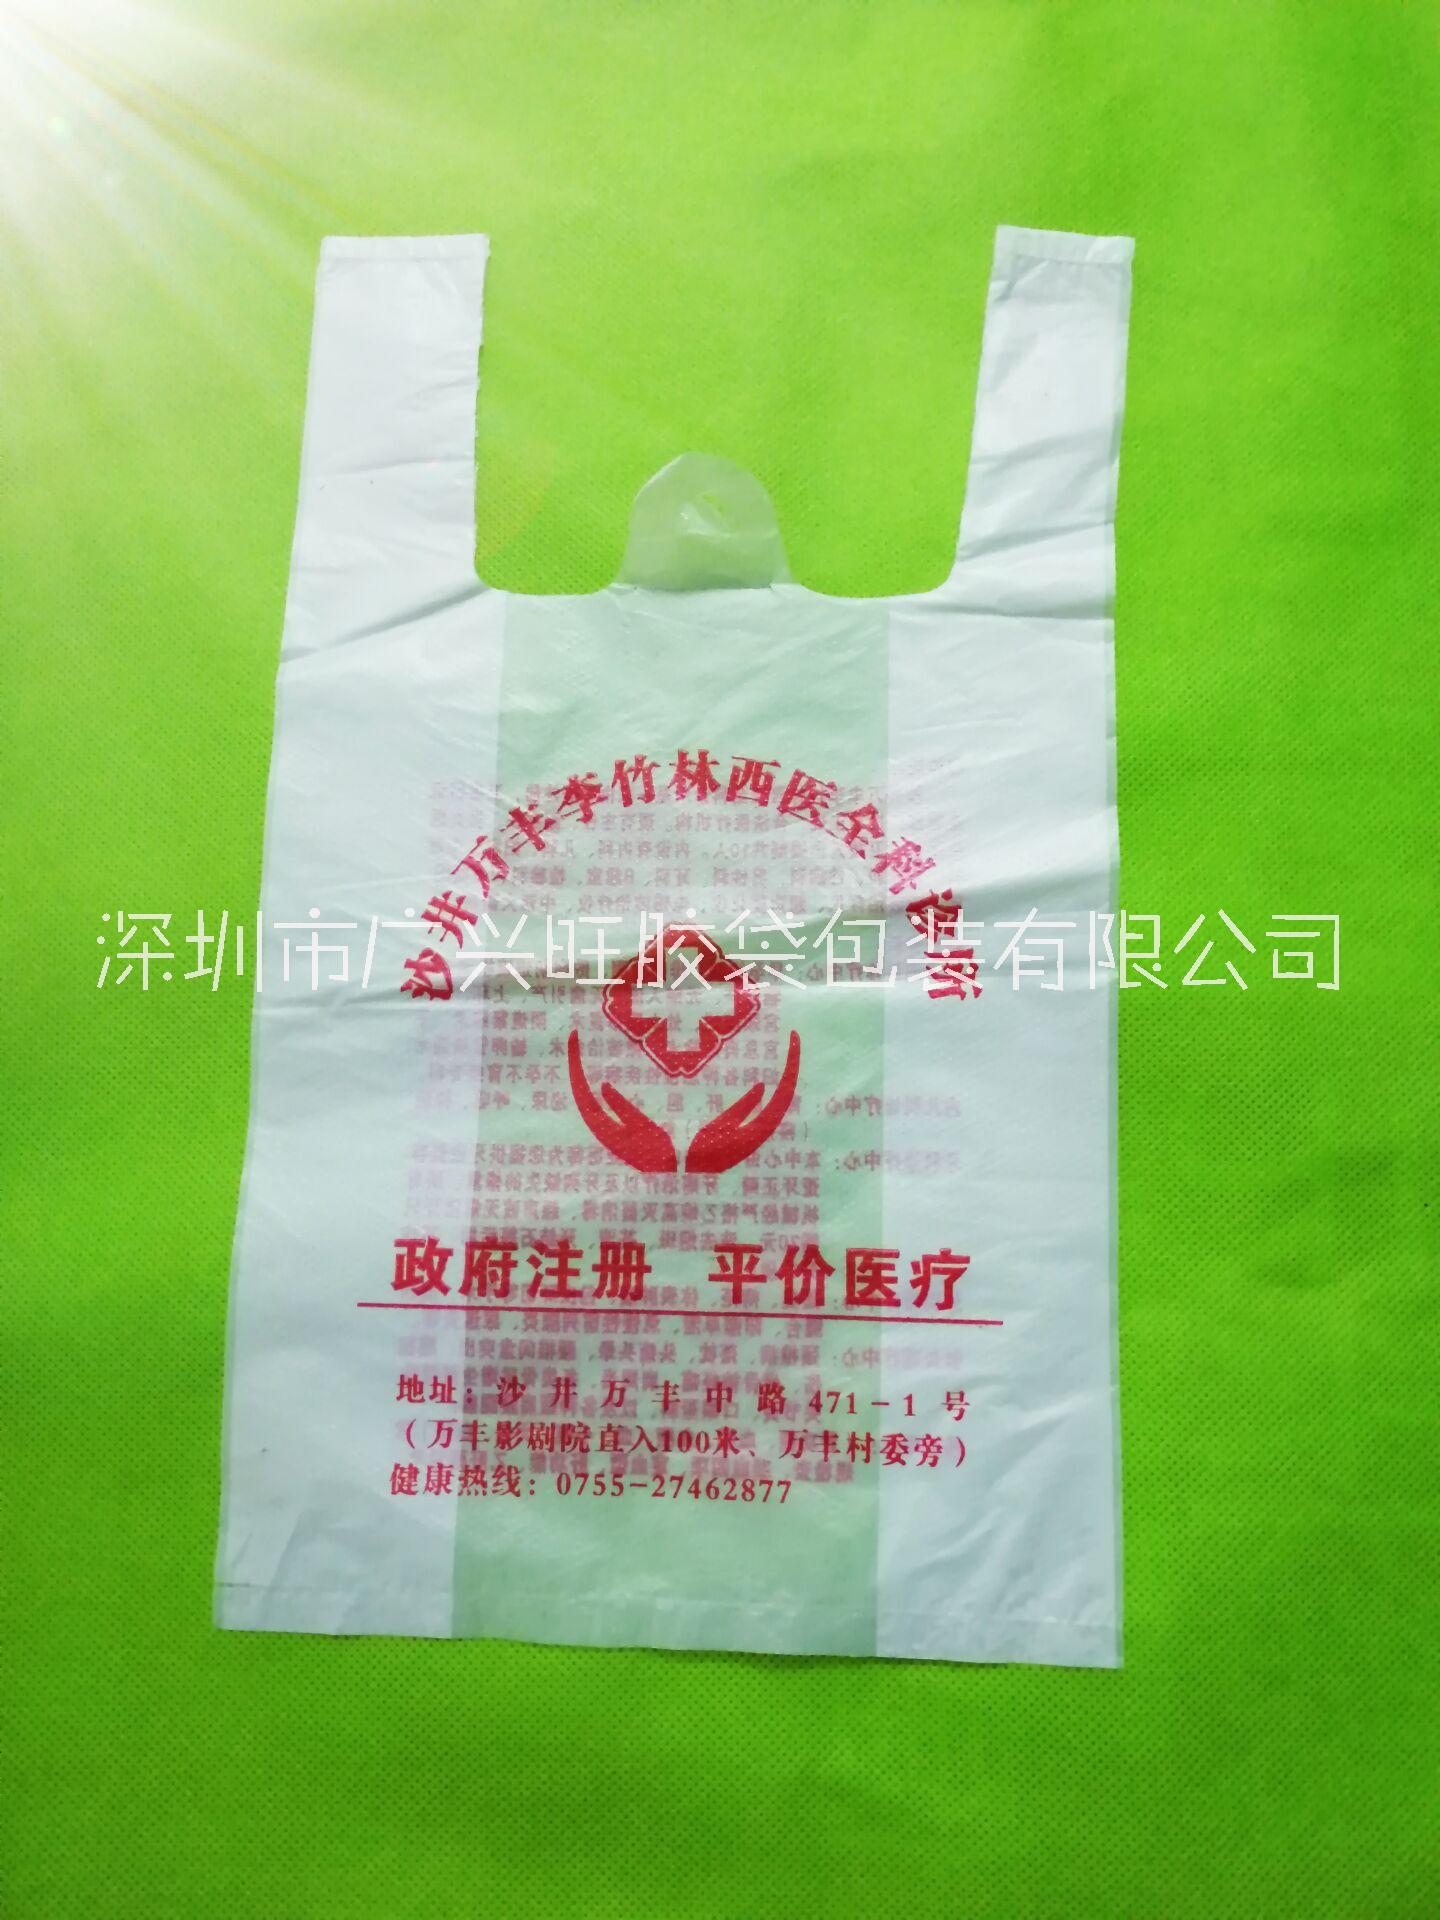 定制 门诊部塑料袋  广告门诊部塑料袋 深圳市广兴旺工厂直接生产图片